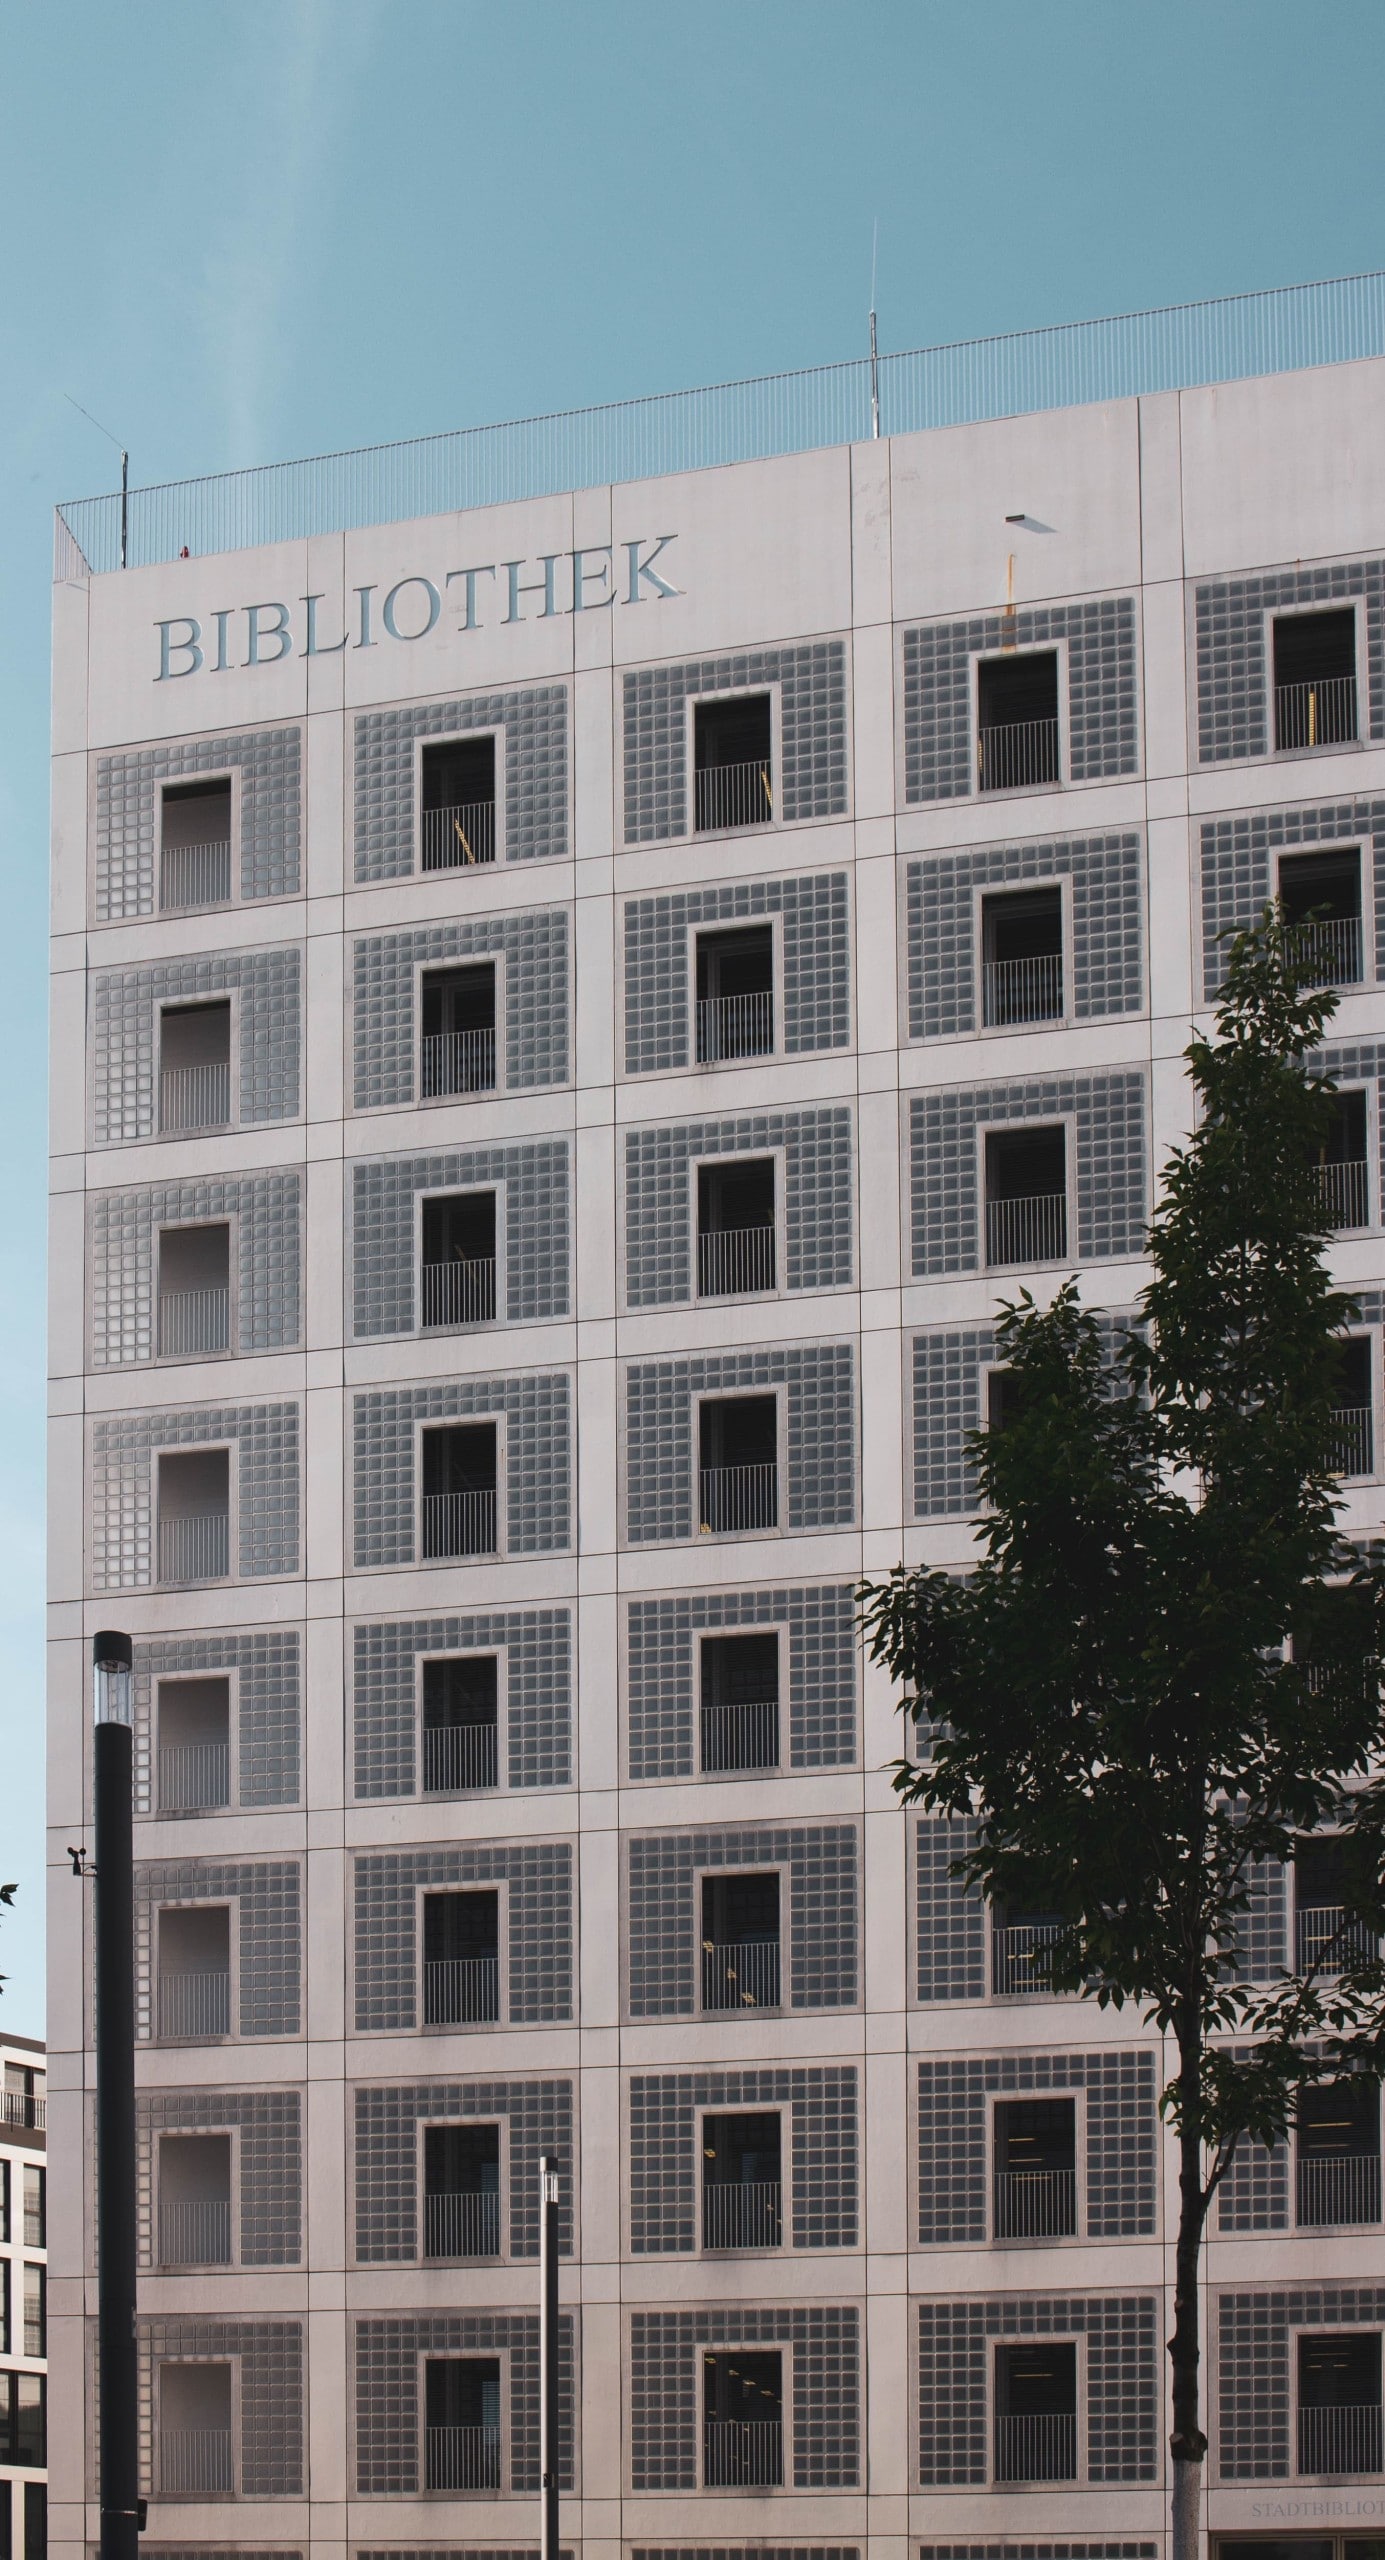 Blick auf die Fassade eines Gebäudes mit gerasterter Fassade, dessen Flächen mit Glasbausteinen gefüllt sind. Stadtbibliothek Stuttgart, Foto: Marcel Strauß via Unsplash